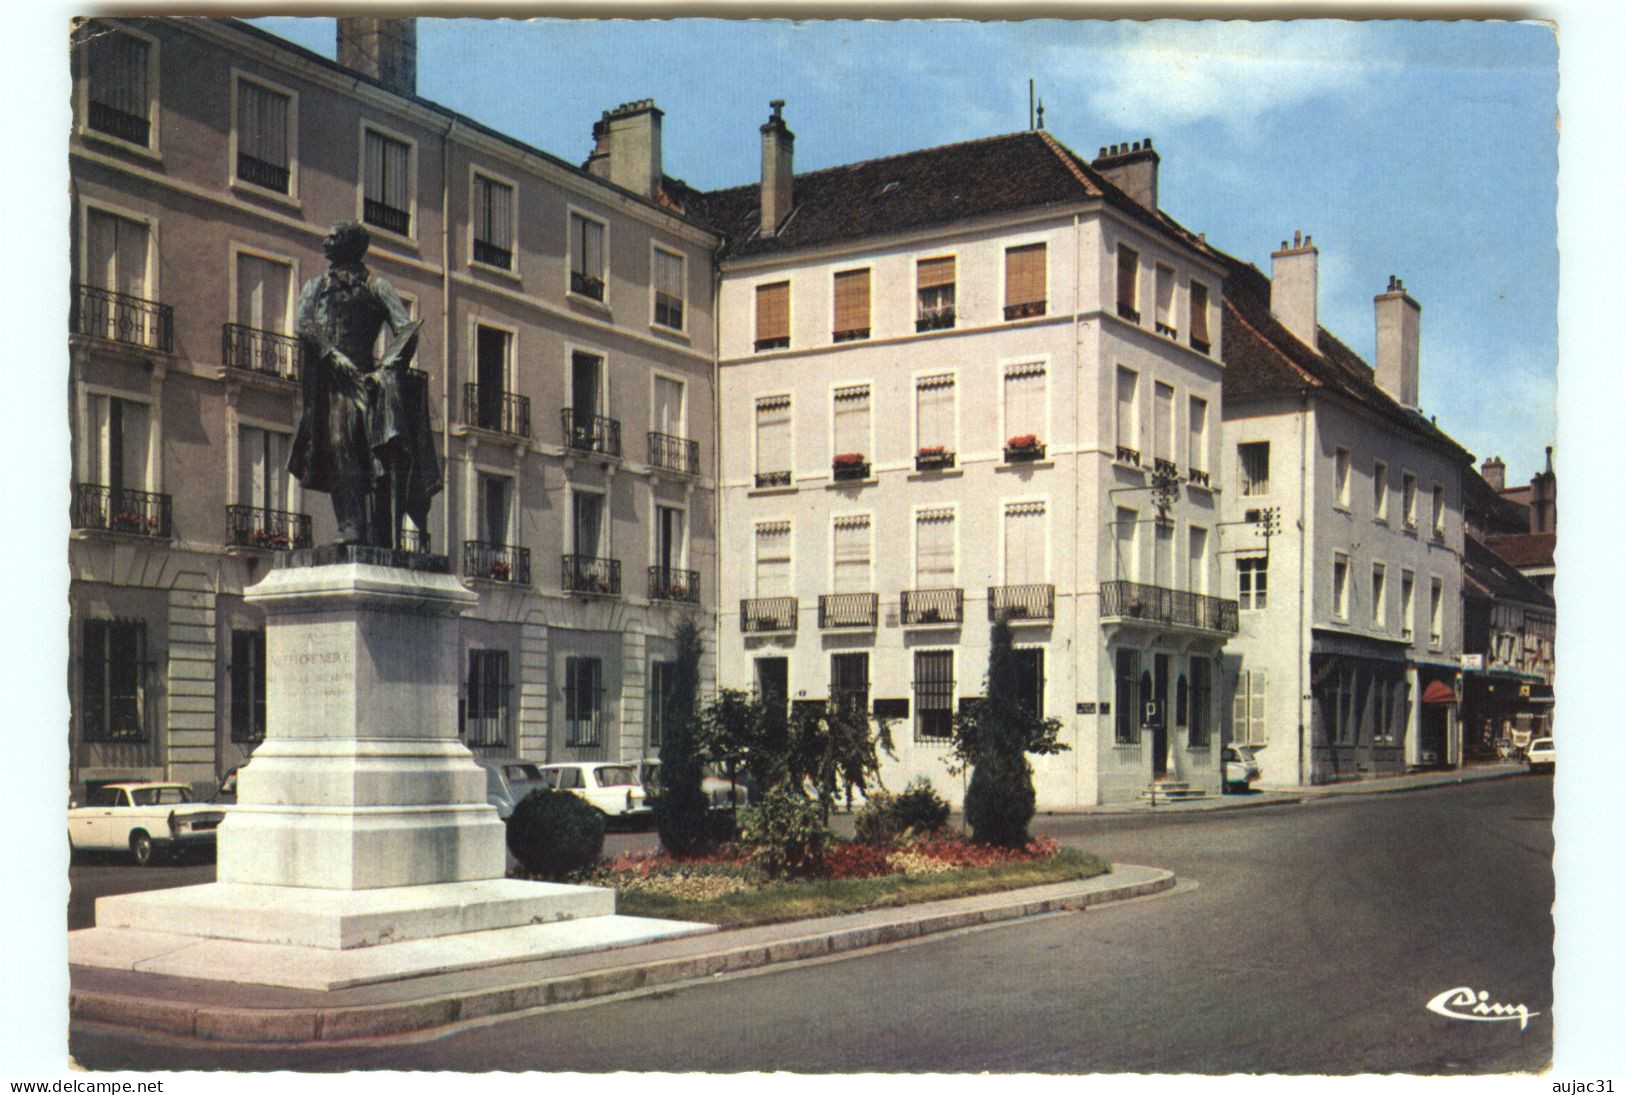 Dép 71 - Chalon Sur Saone - Place De Port Villiers - Statue De Nicéphore-Niepce Inventeur De La Photographie - état - Chalon Sur Saone